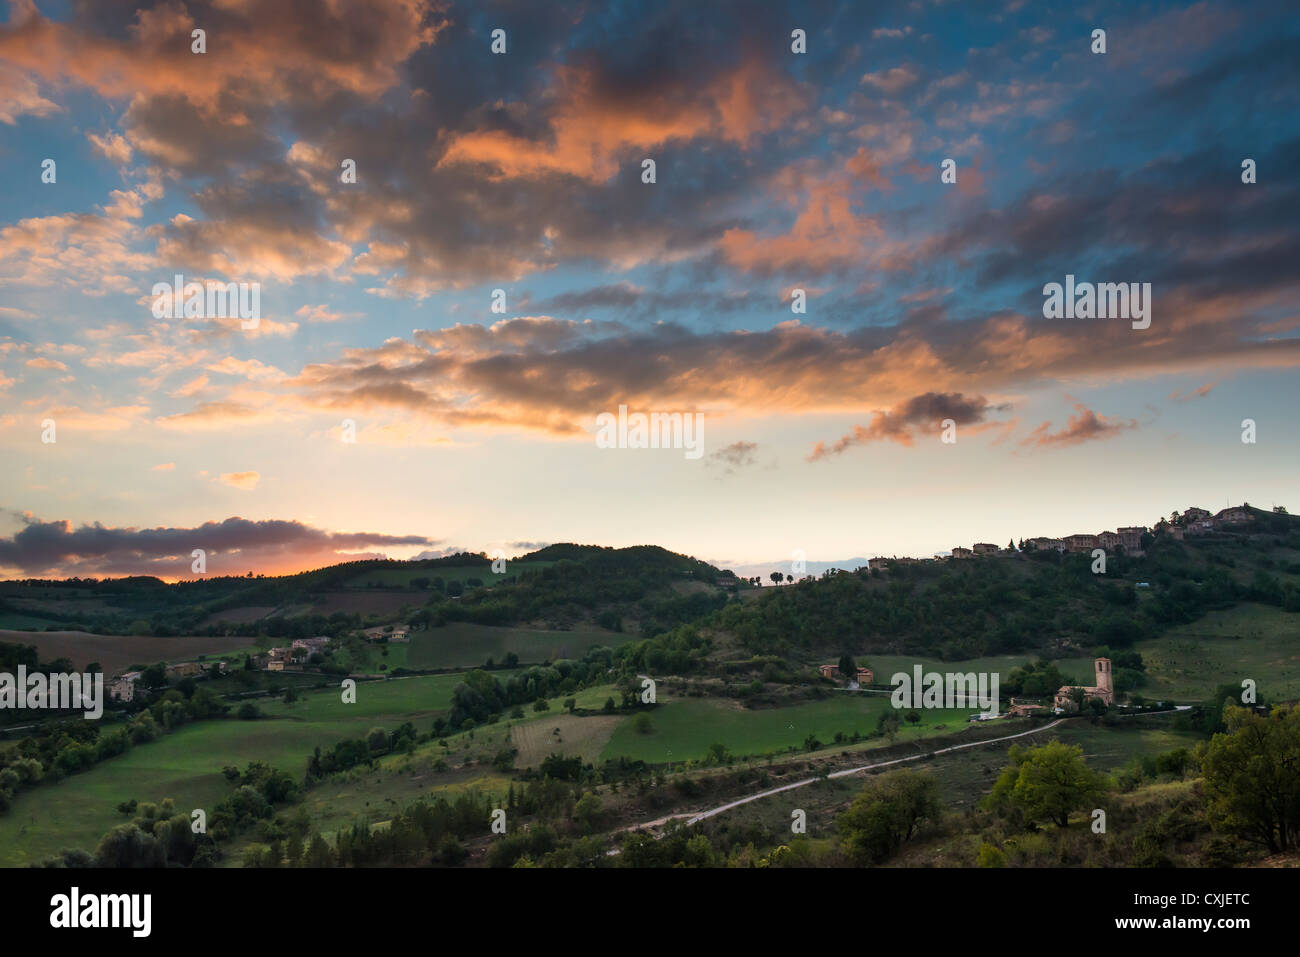 Gran puesta de sol con nubes en italiano país durante el verano. La imagen tiene fantásticos colores. Foto de stock